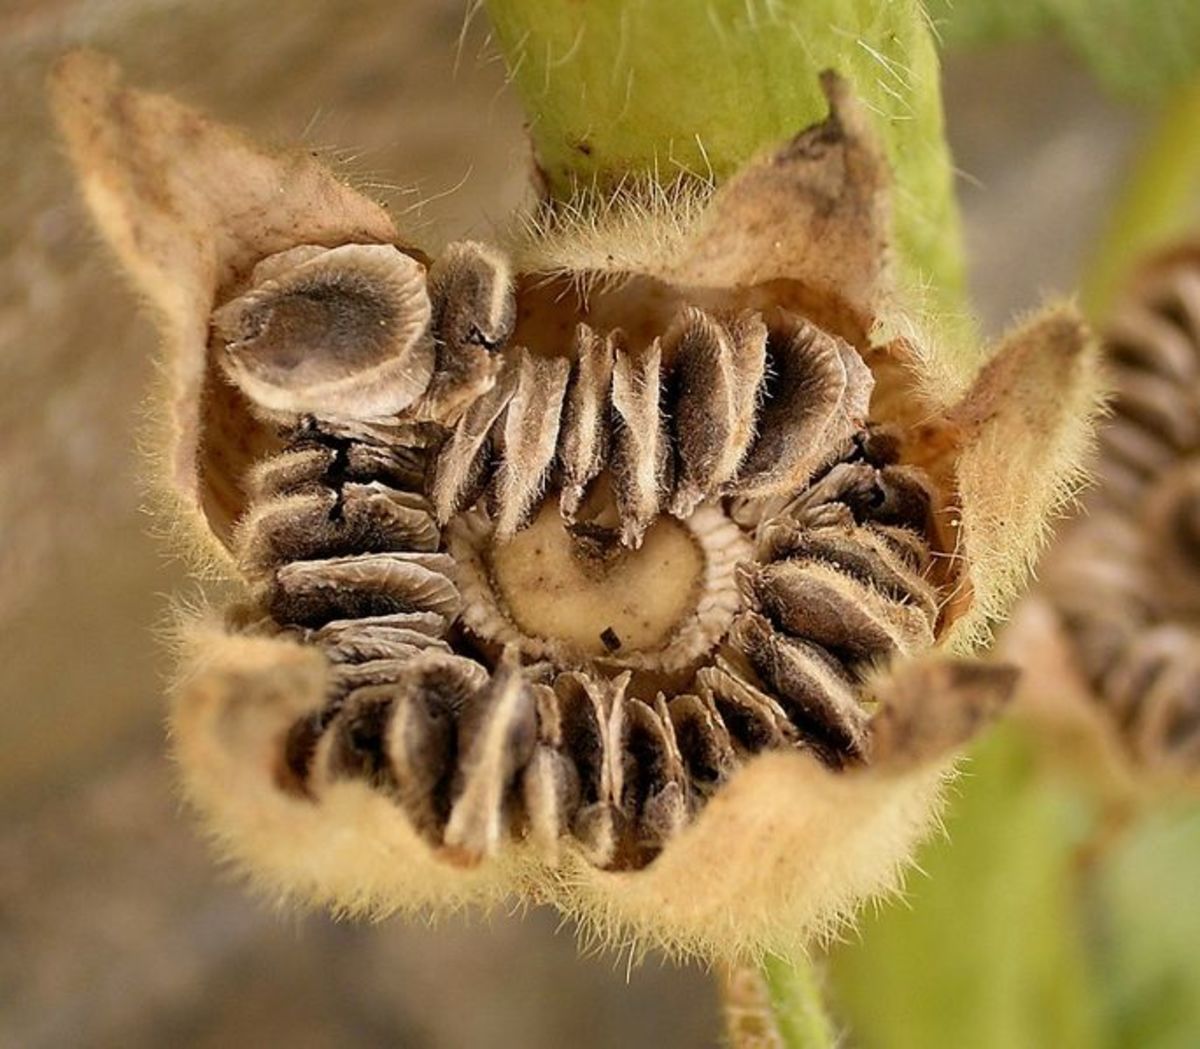 Семена мальвы крупные и имеют довольно жесткую семенную оболочку.